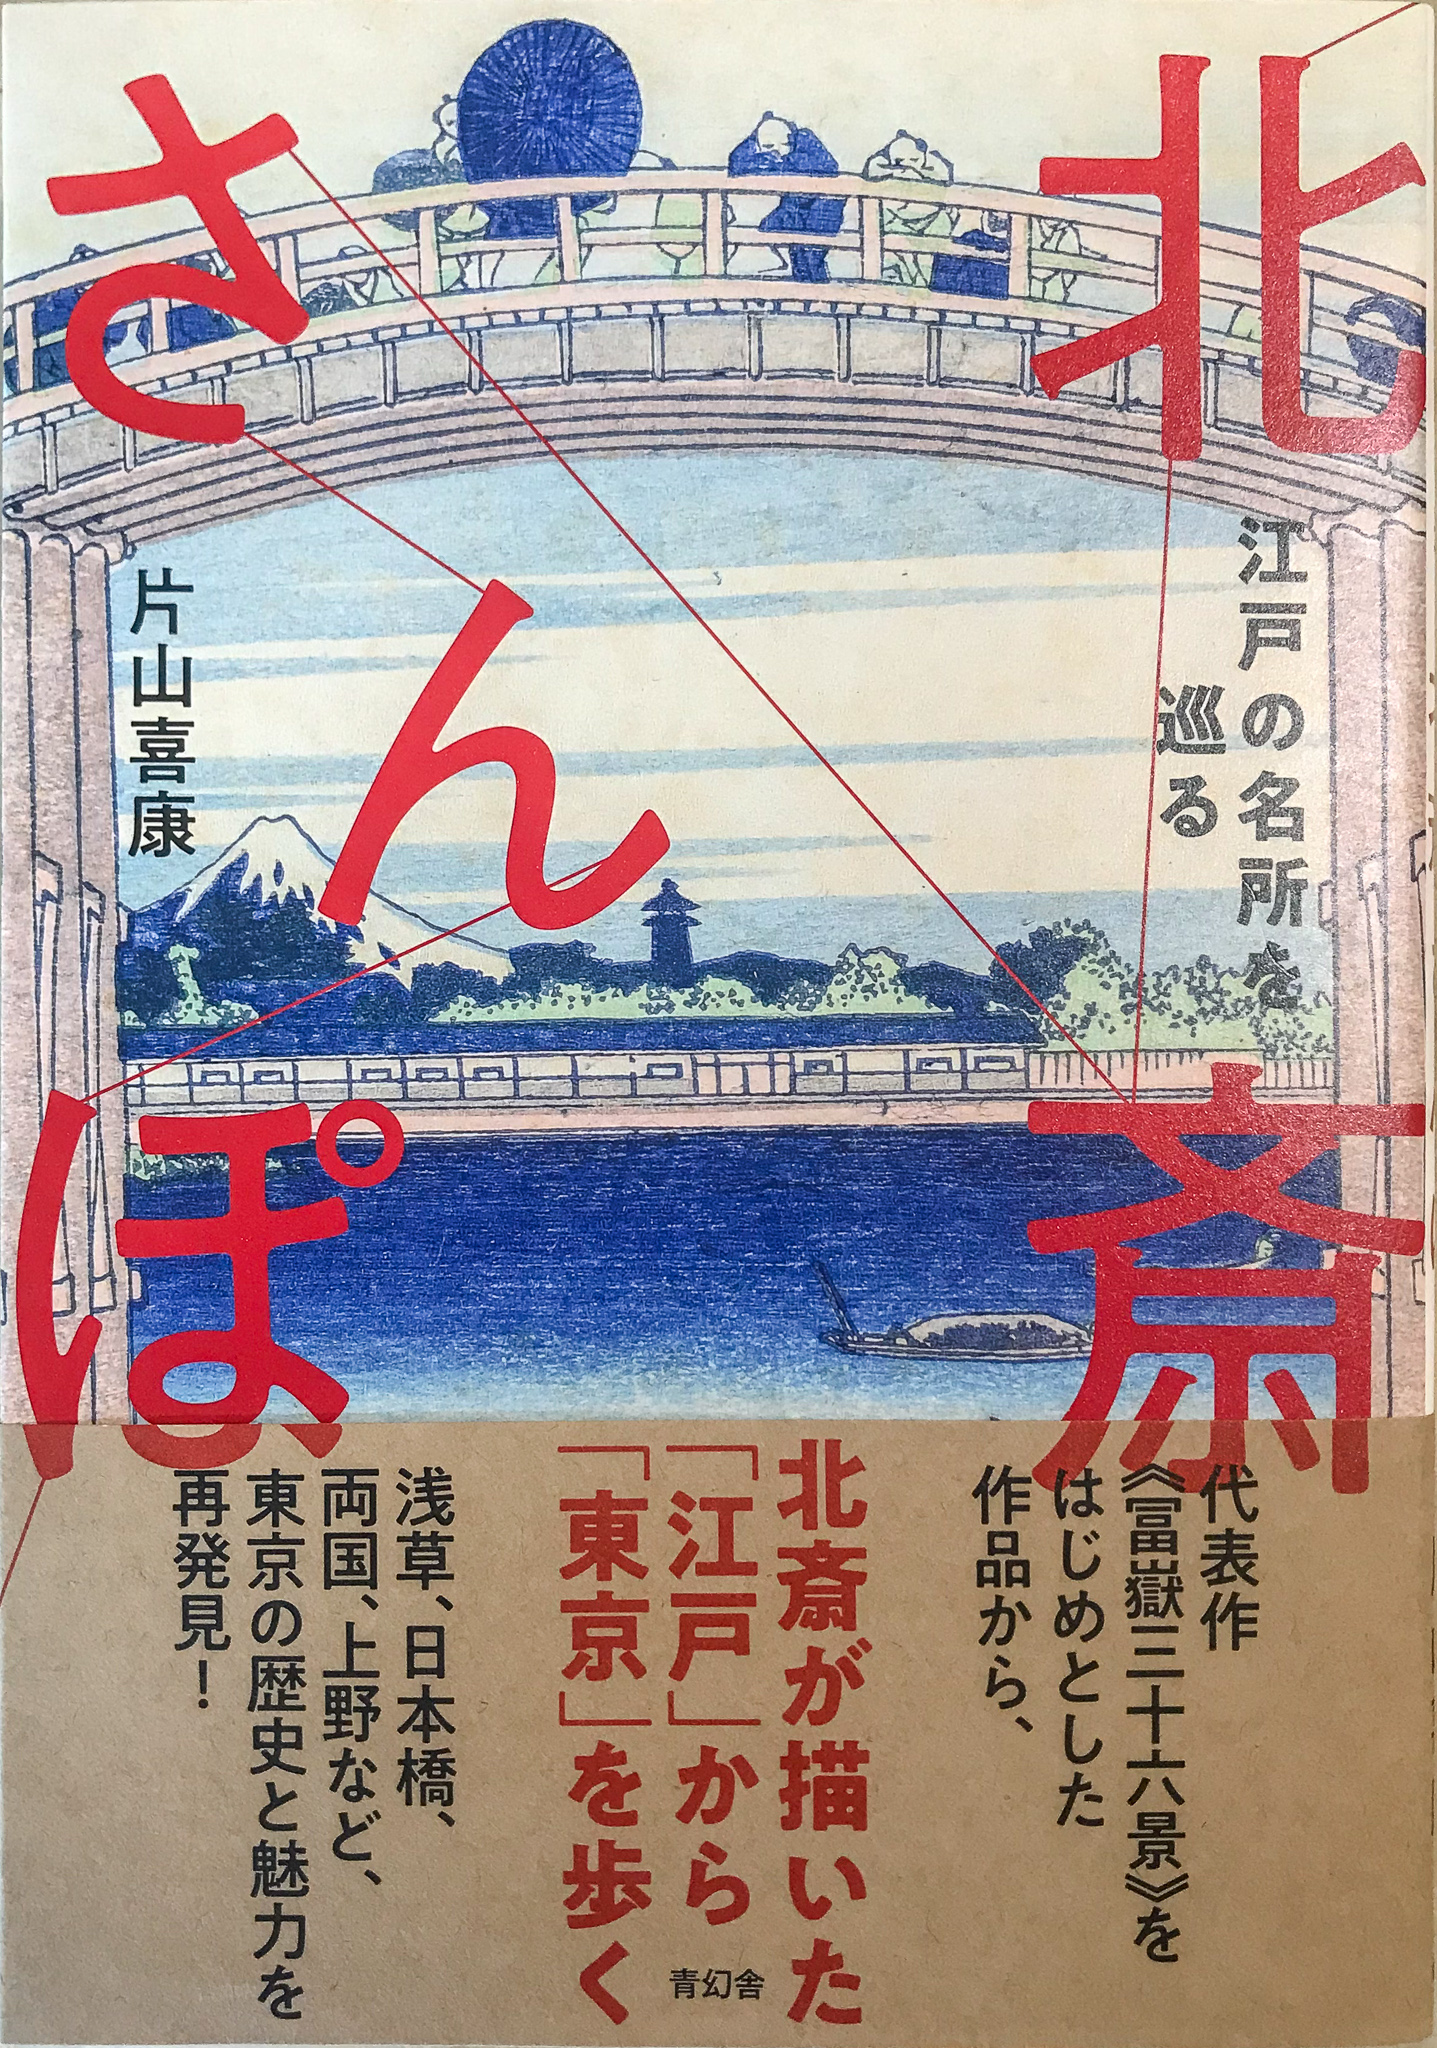 青幻舎発行「北斎さんぽ」の凱風快晴、山下白雨ページに掲載されました